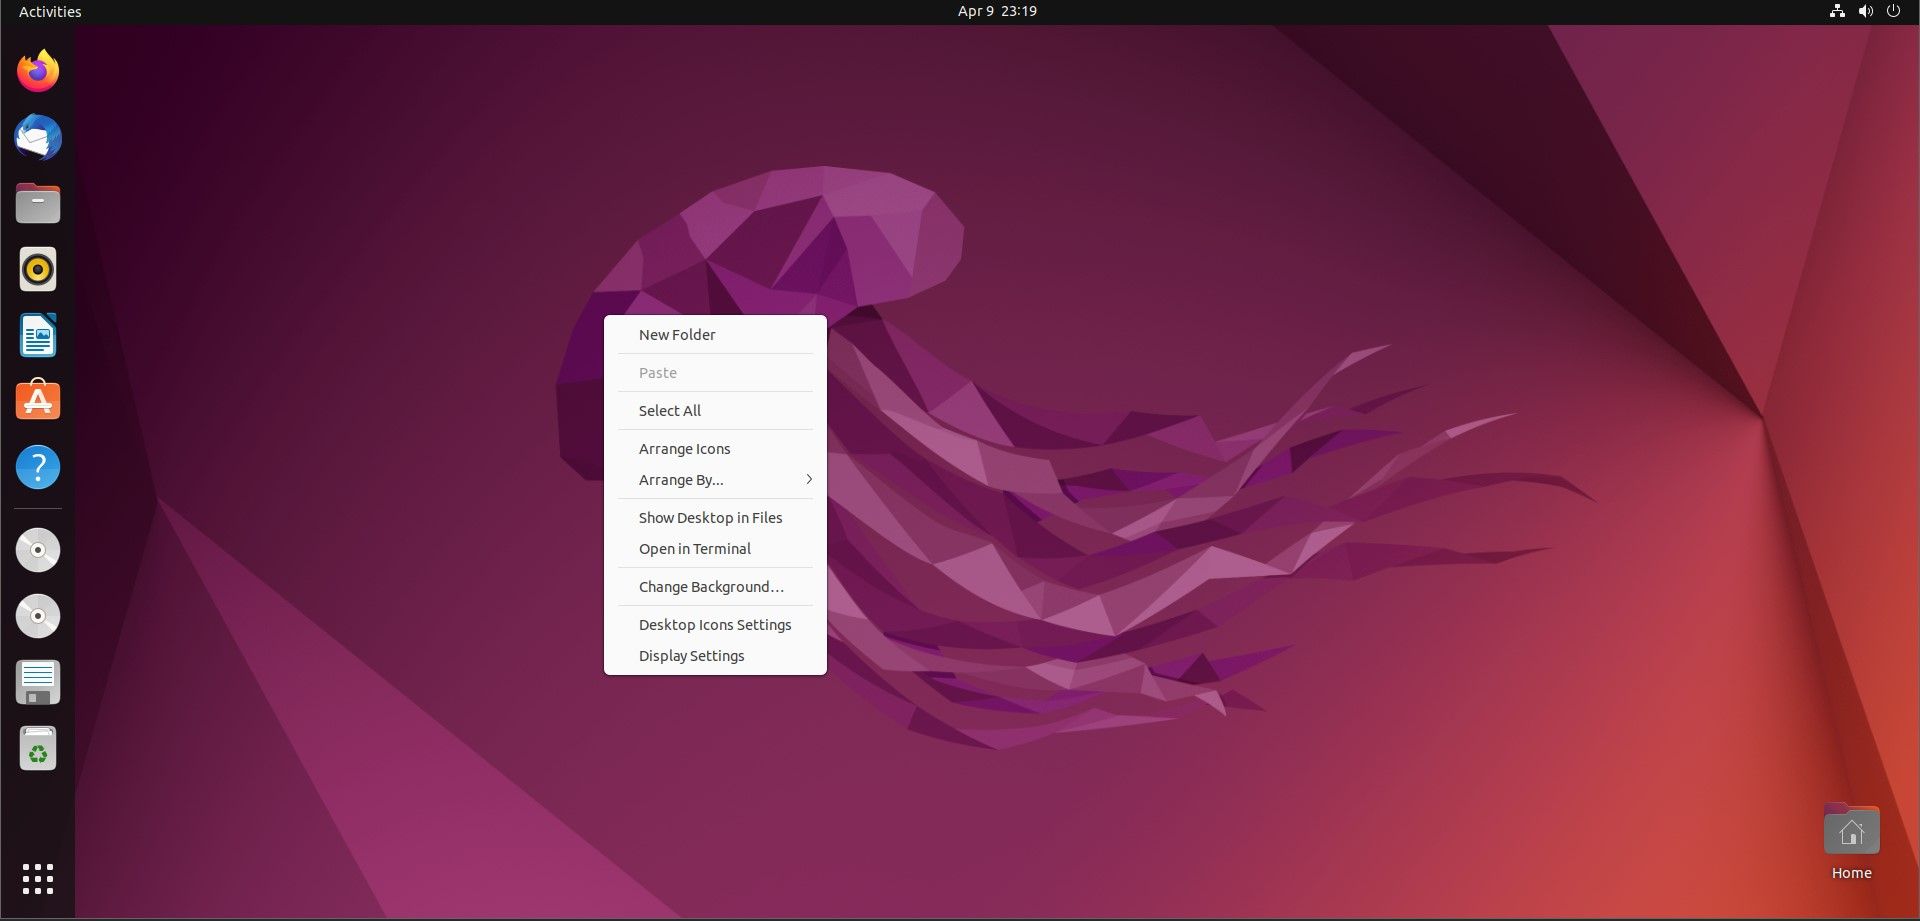 Interface de área de trabalho do Ubuntu com uma caixa de diálogo aberta